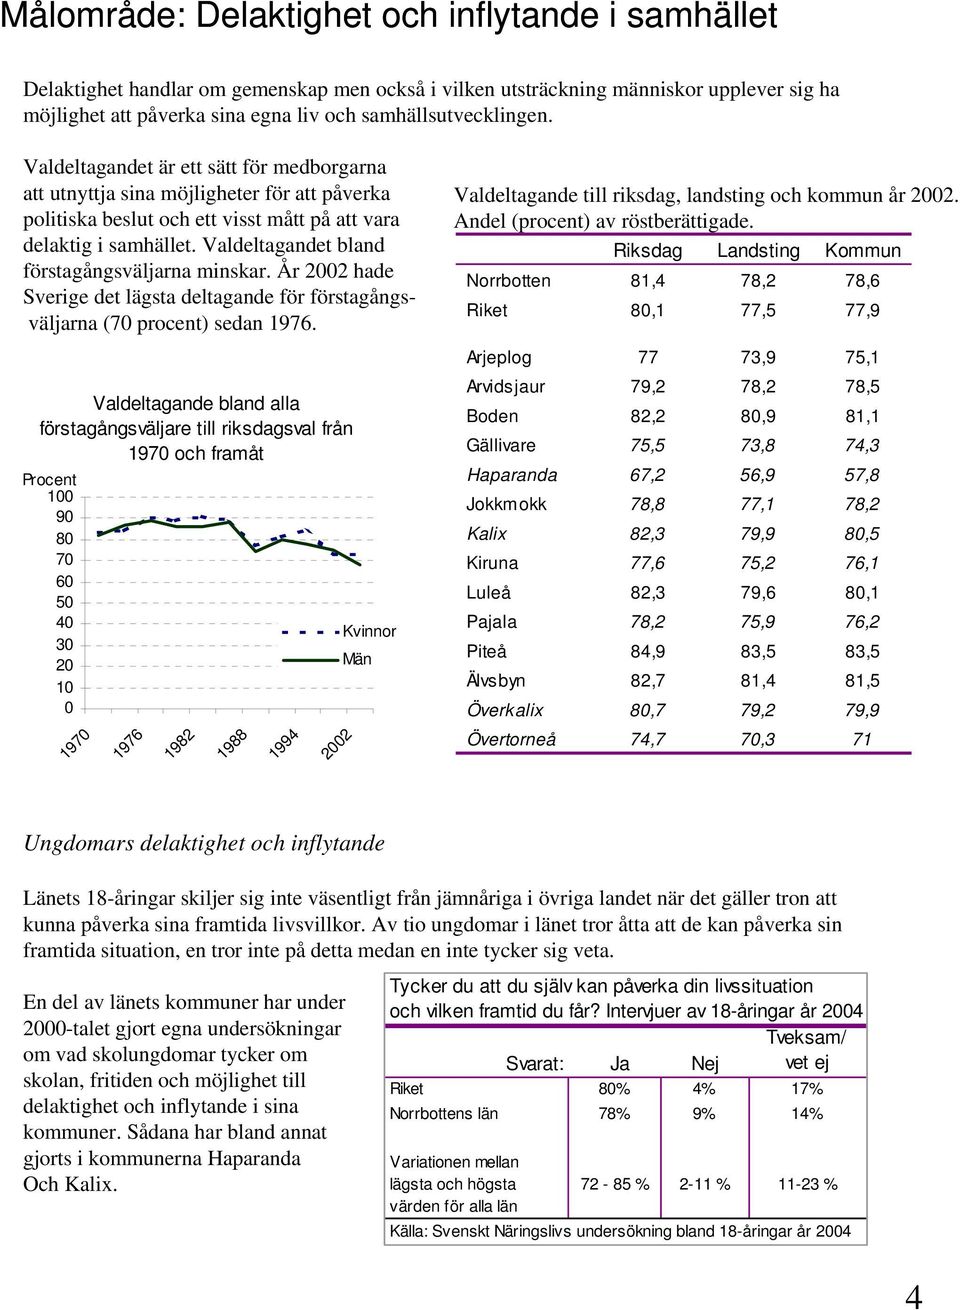 Valdeltagandet bland förstagångsväljarna minskar. År 2002 hade Sverige det lägsta deltagande för förstagångsväljarna (70 procent) sedan 1976.